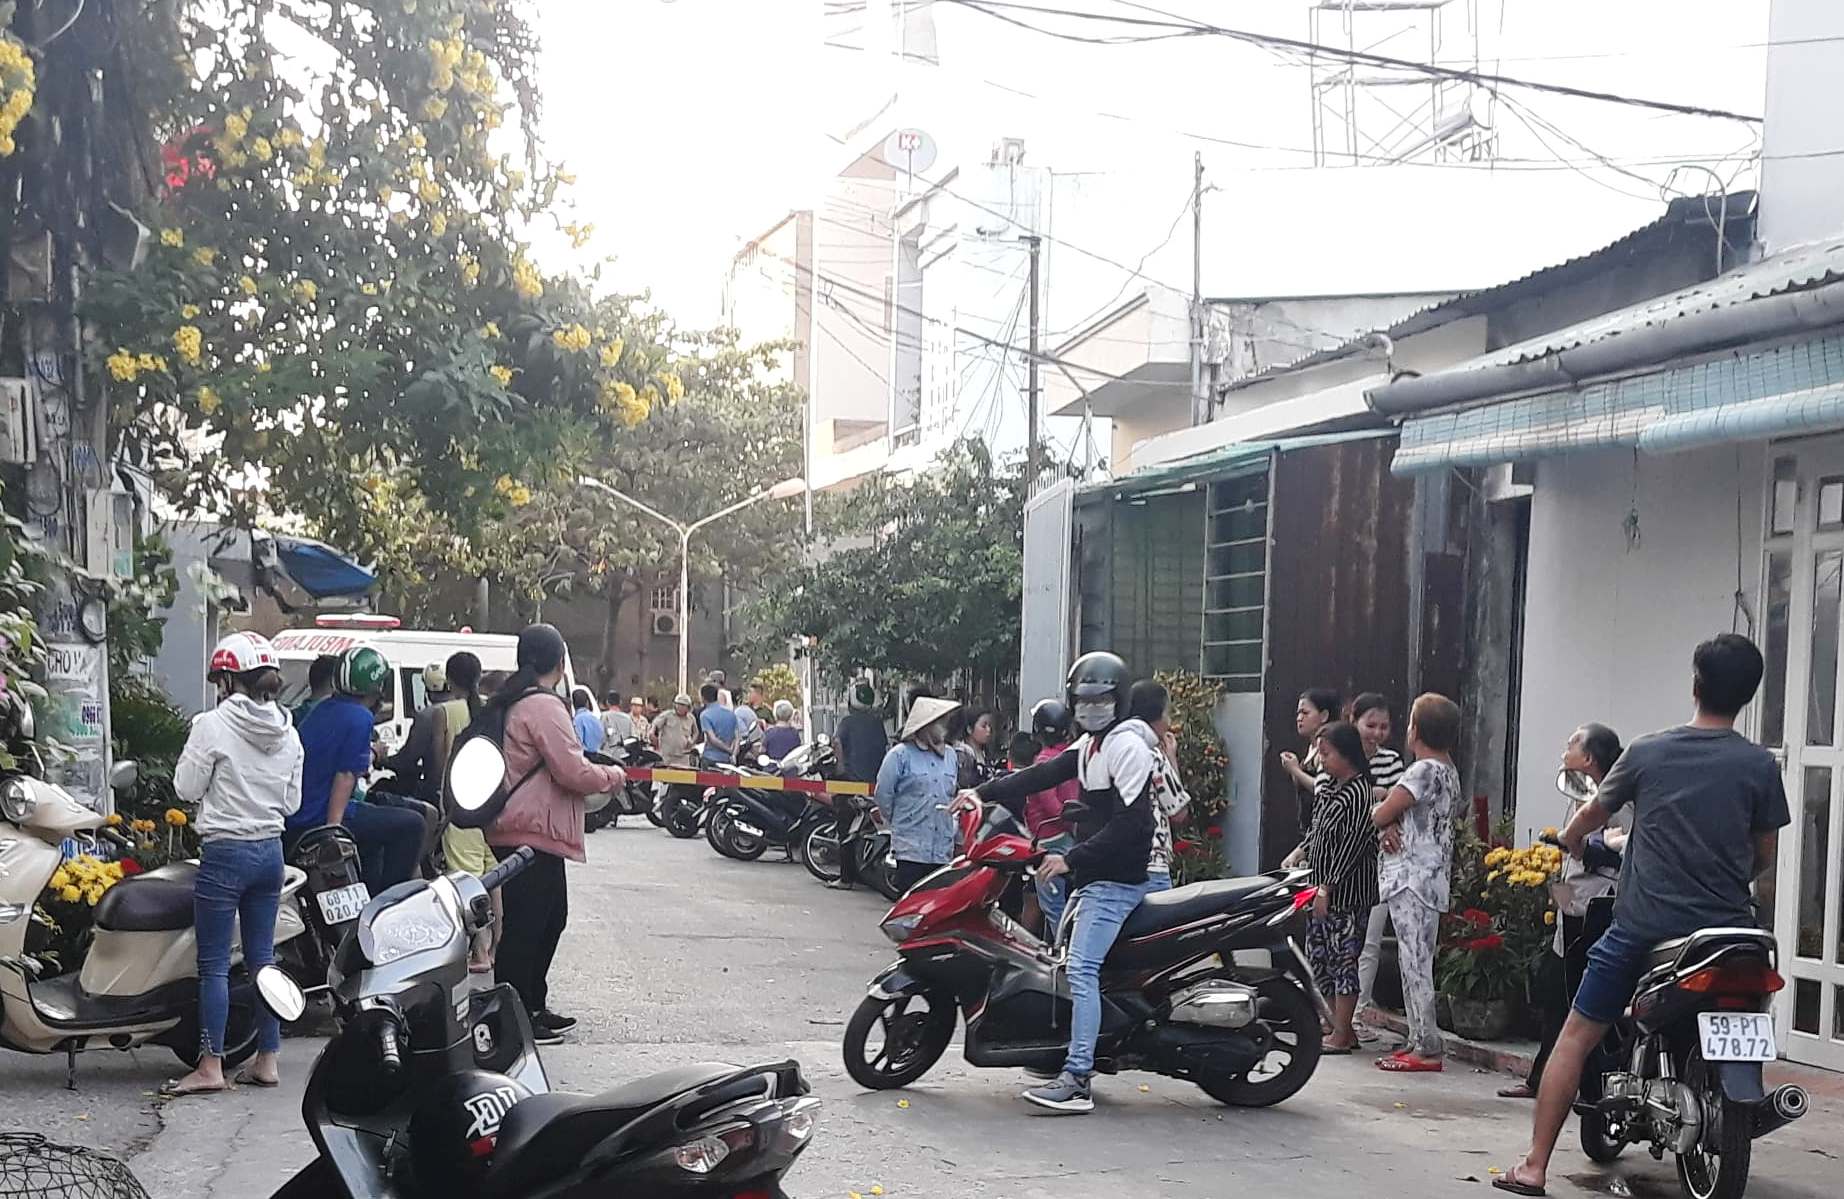 Thanh niên tử vong tại chung cư ở Sài Gòn sau tiếng động lạ - 1